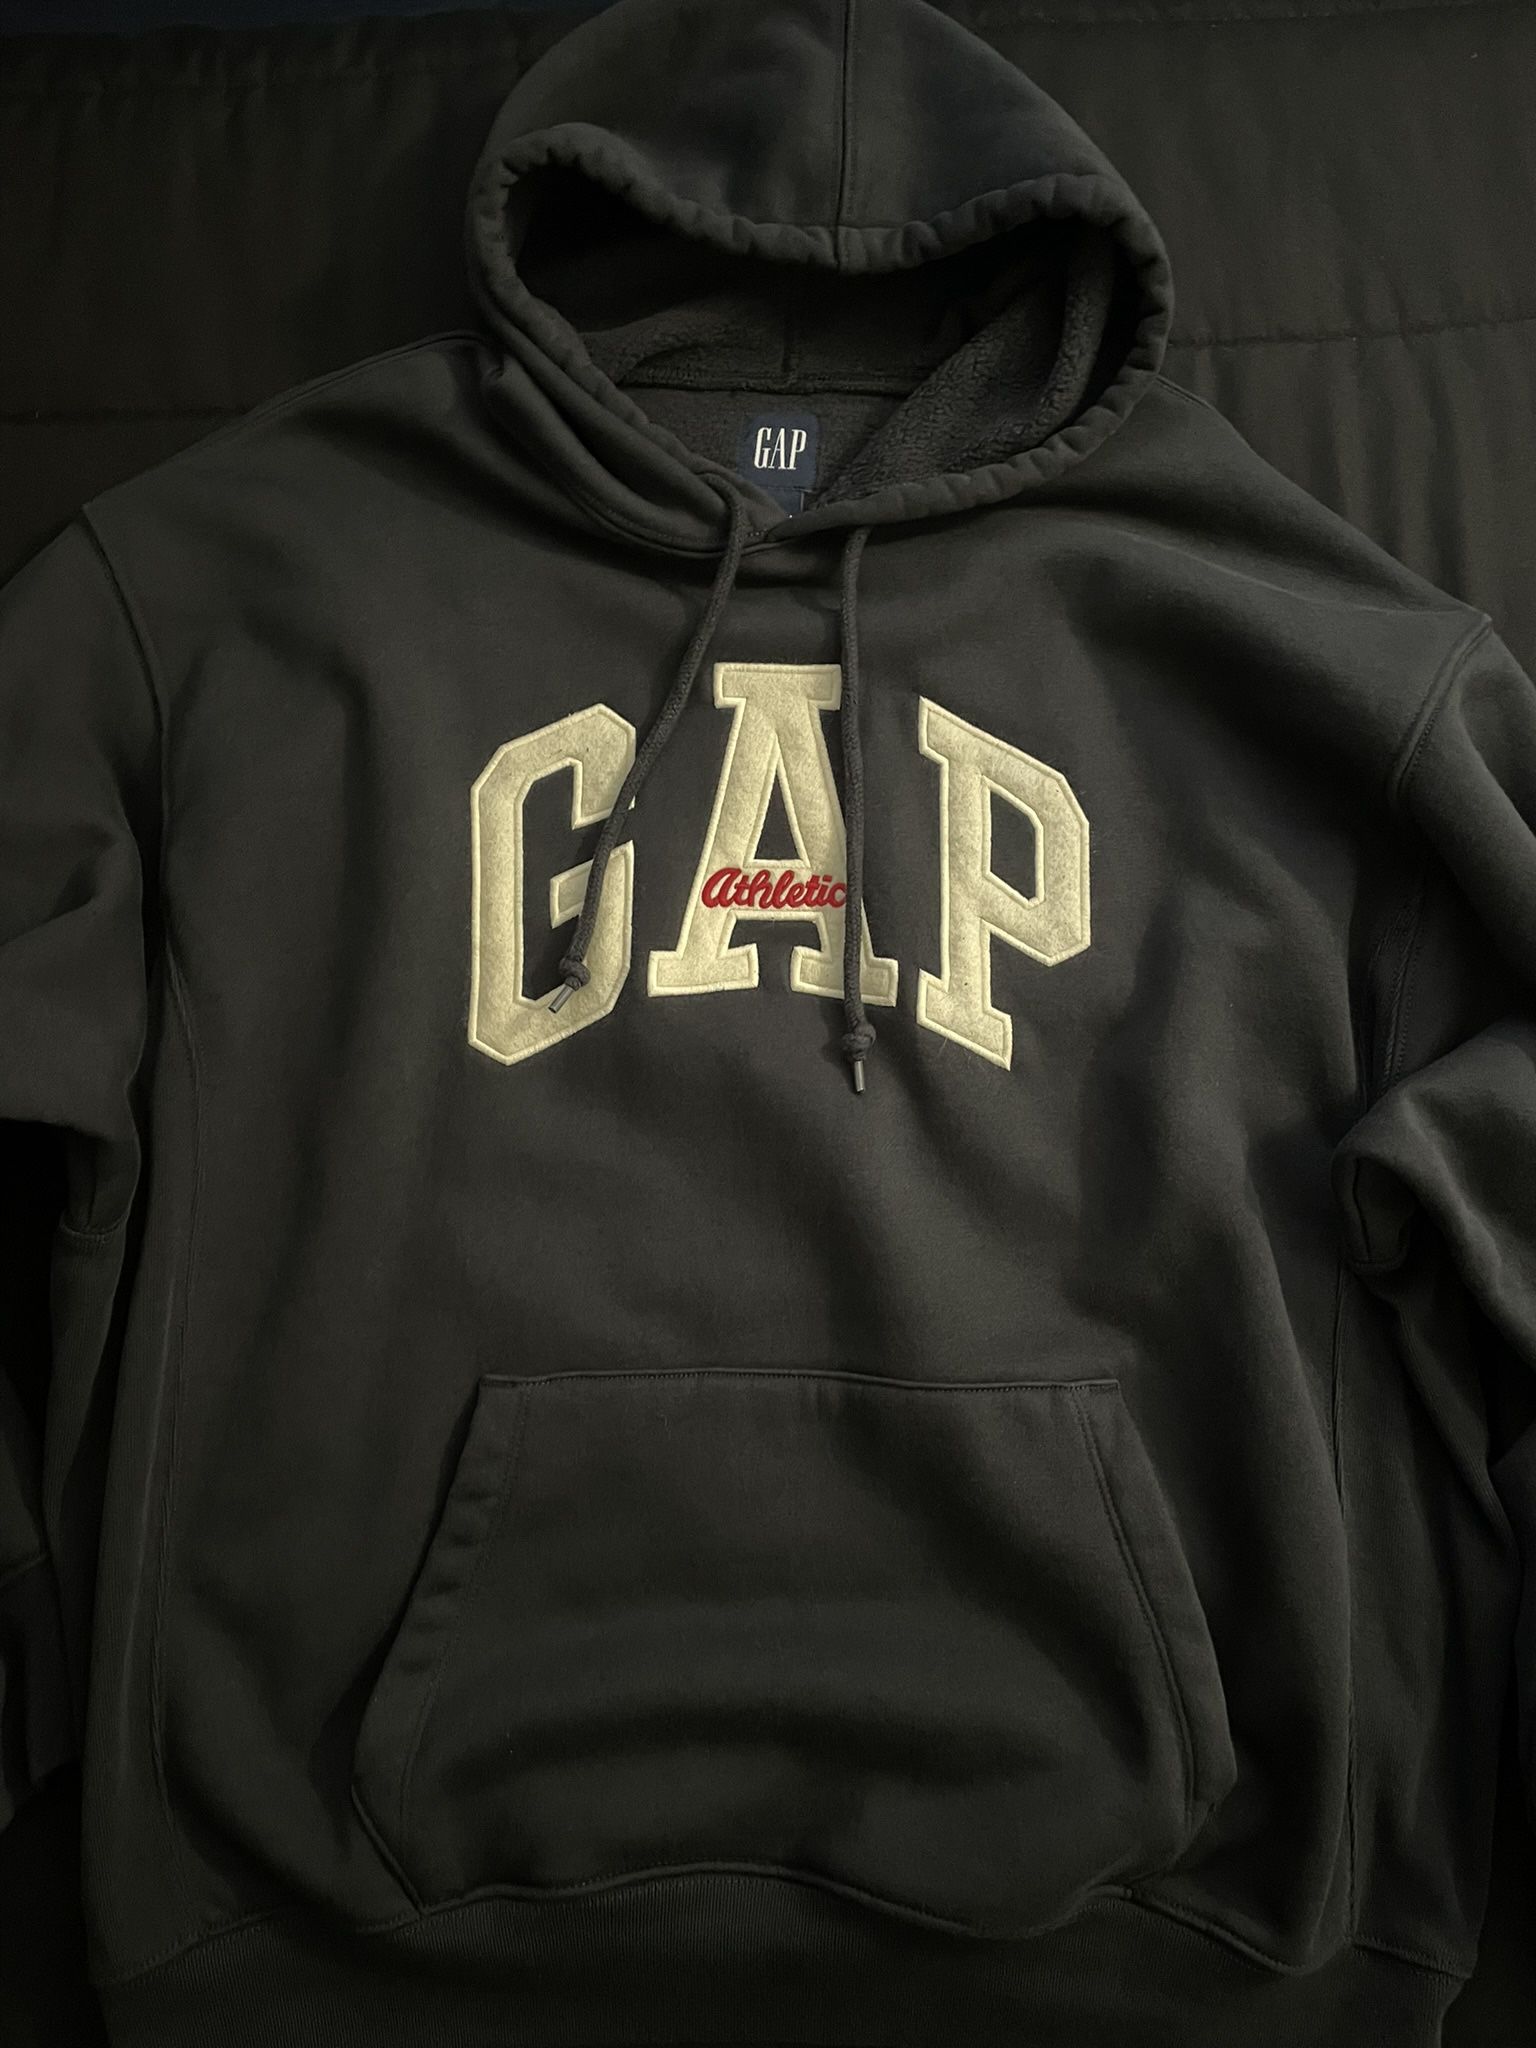 Gap Hoodie